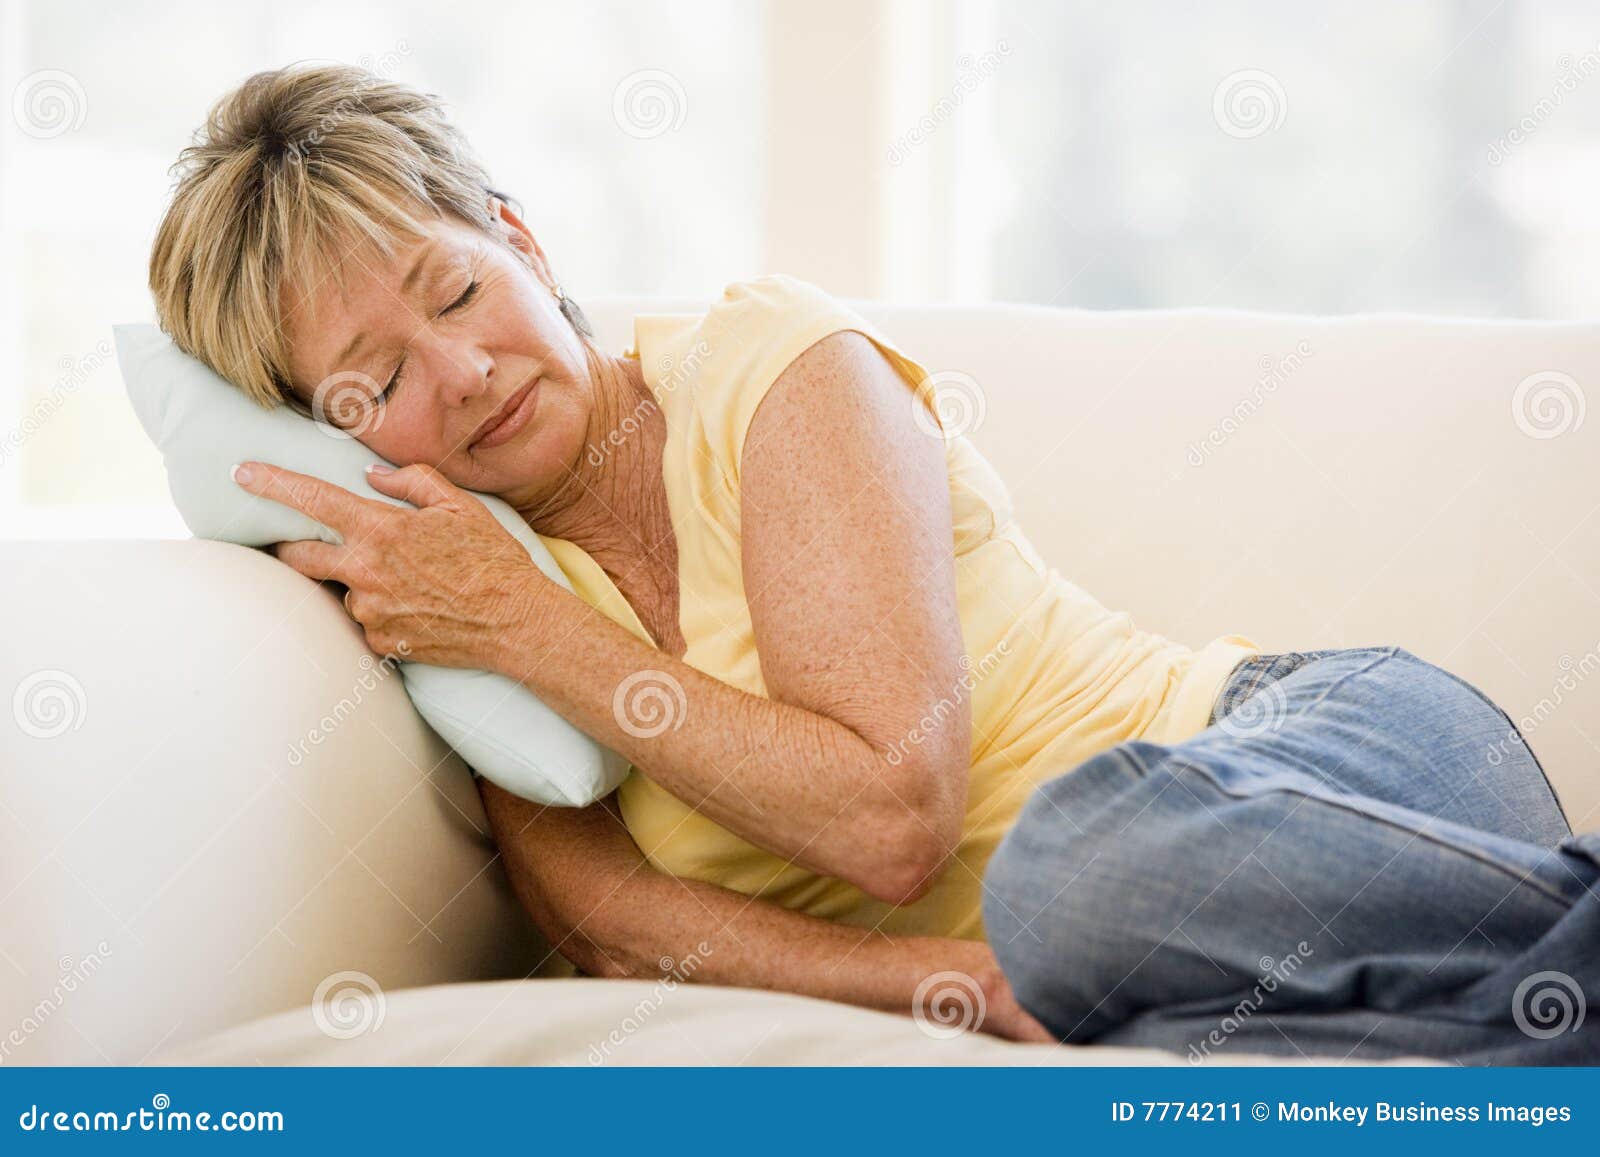 woman feeling unwell